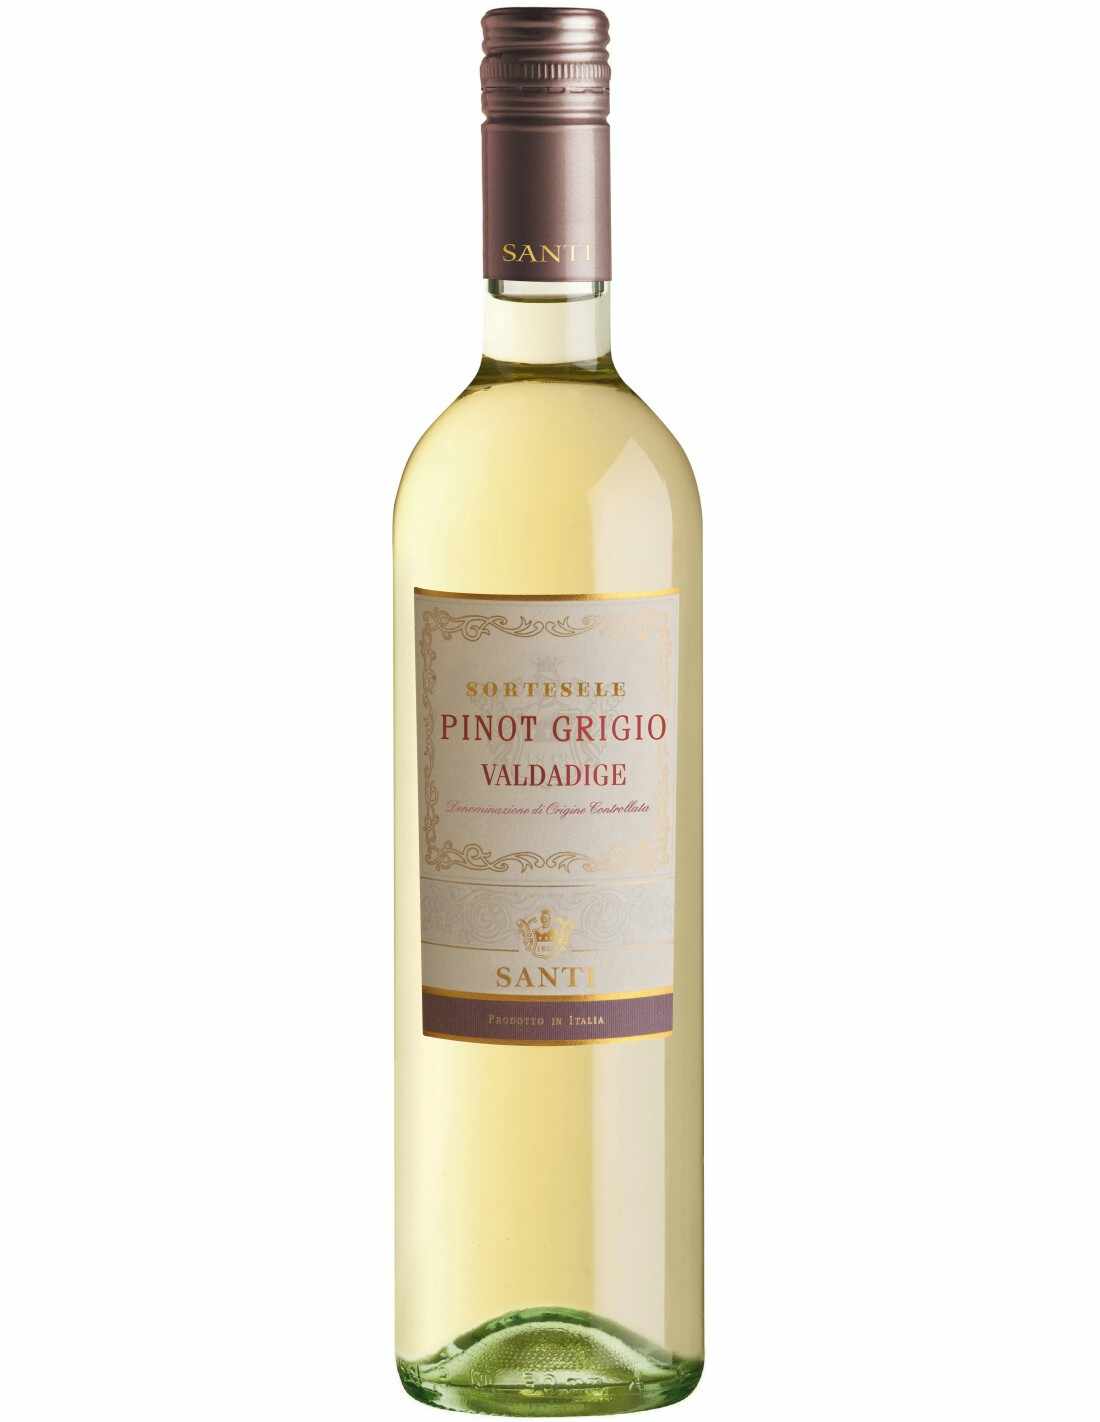 Vin alb, Pinot Grigio, Santi Sortesele Valdadige, 0.75L, 12.5% alc., Italia